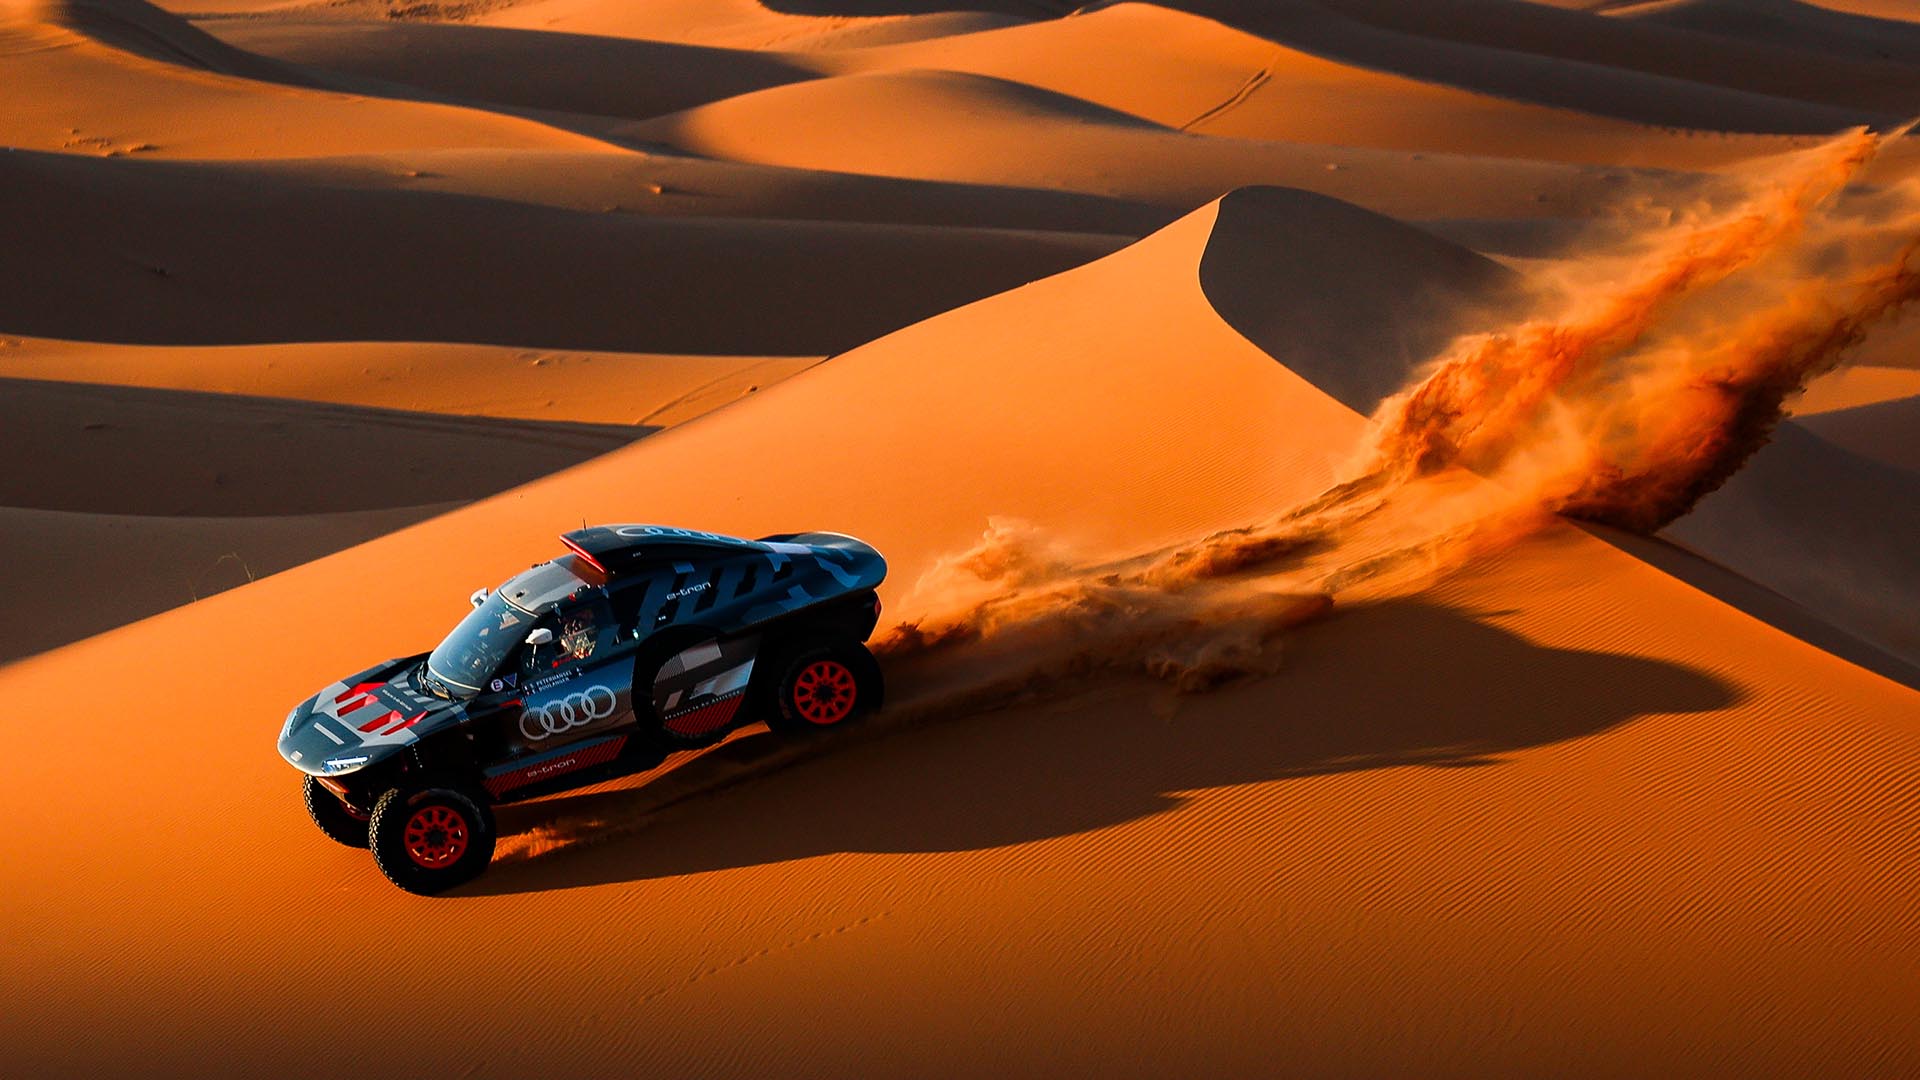 Buy Dakar Desert Rally